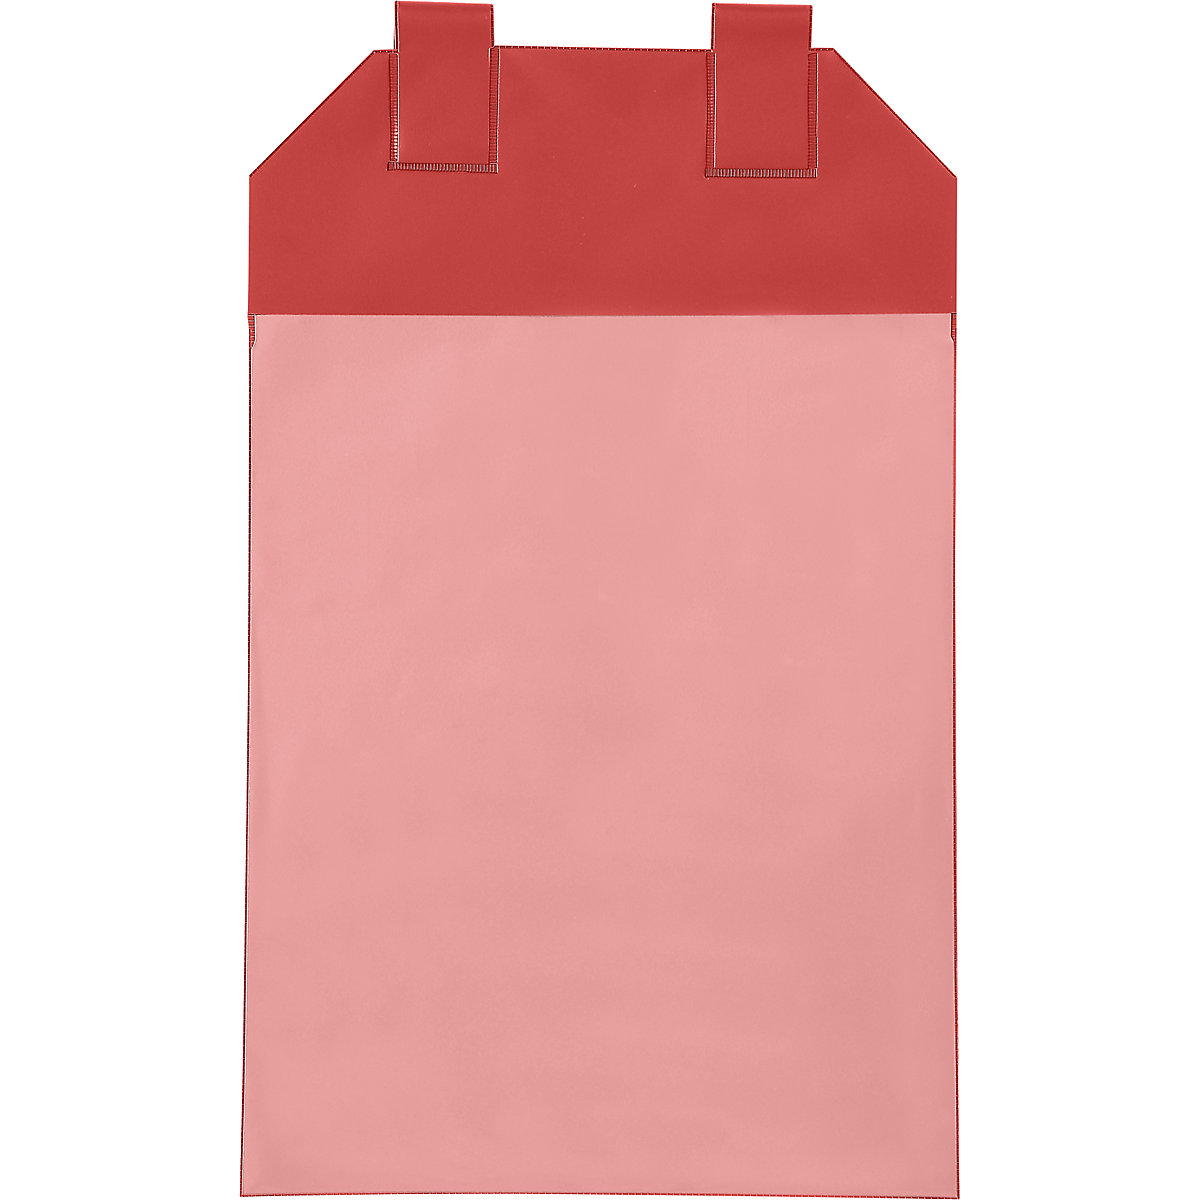 Gitterboxtaschen, VE 50 Stk, für Papierformat DIN A4, rot-6